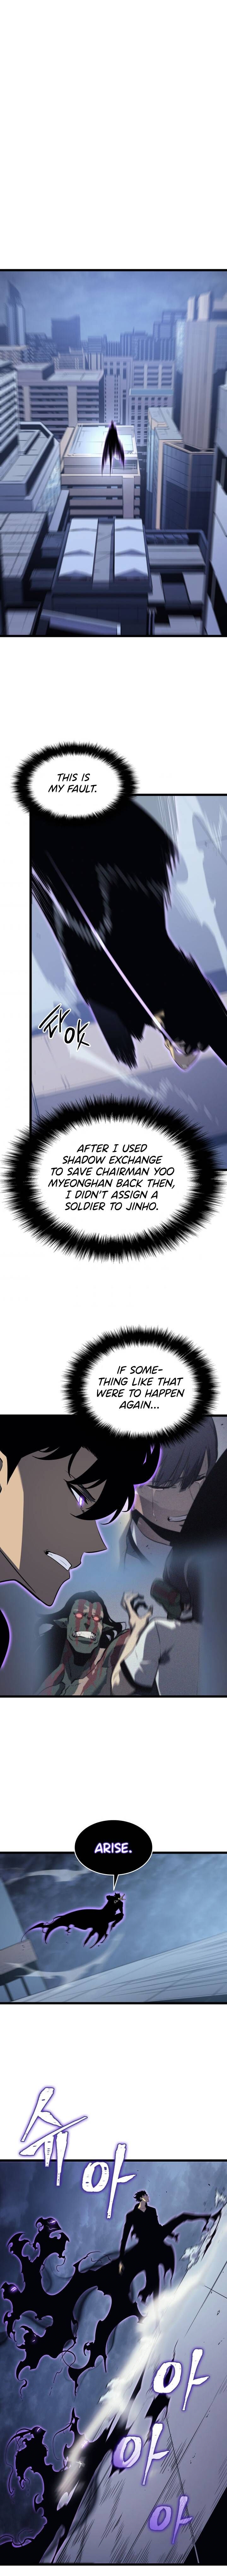 Solo Leveling Manga Manga Chapter - 143 - image 14